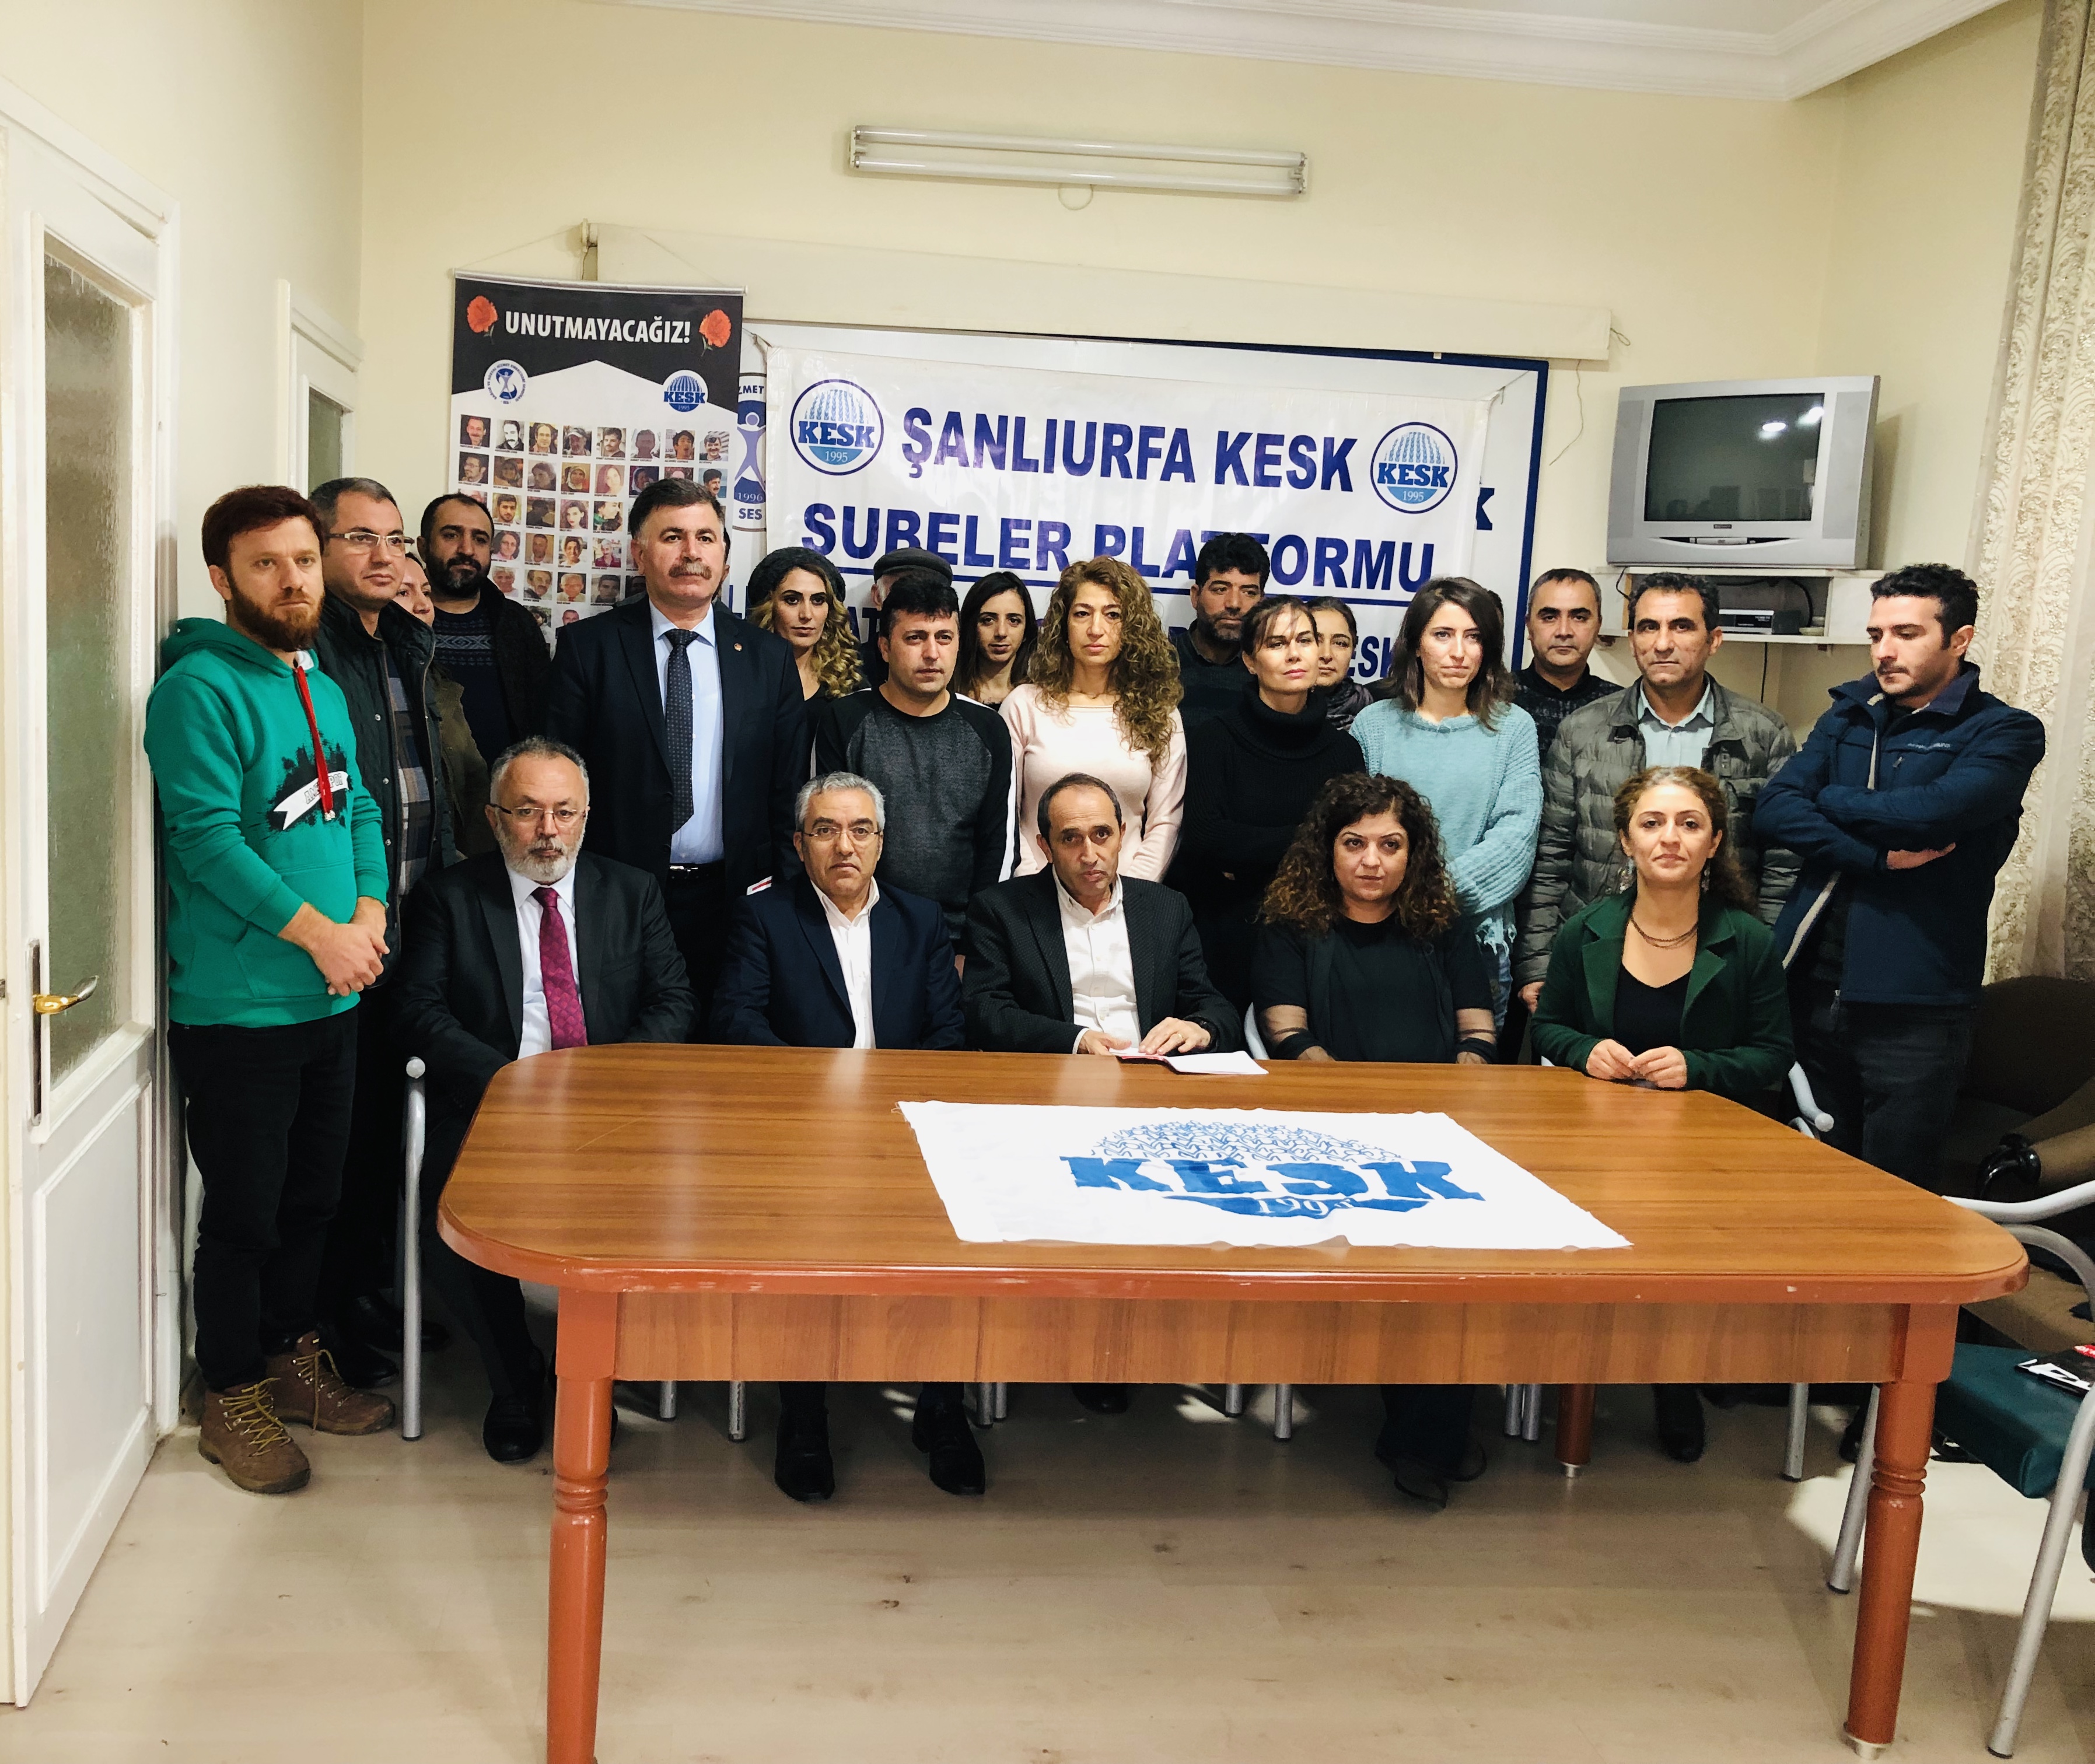 16 Aralık Diyarbakır Bölge Mitingi Çalışmaları Şanlıurfa’da da Devam Ediyor